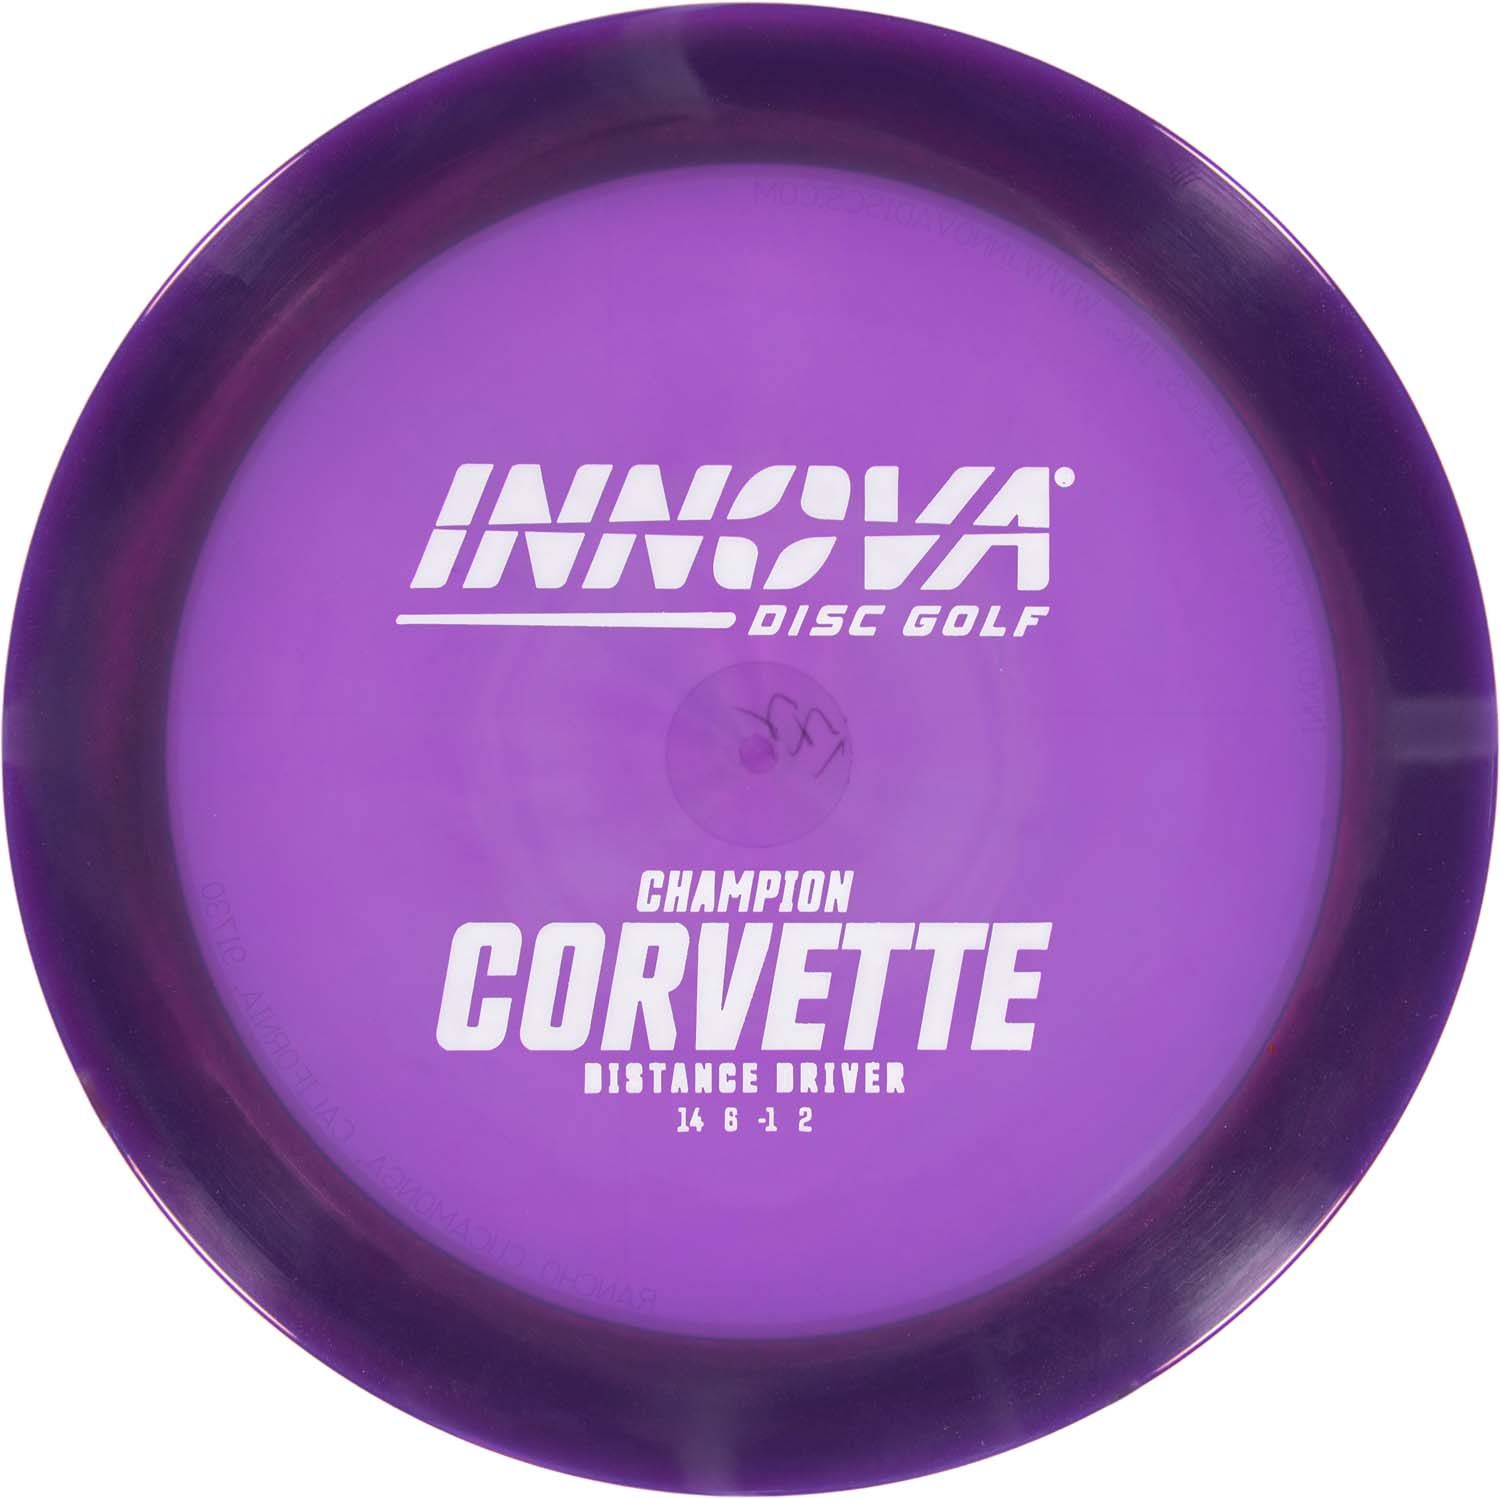 Champion-purple-corvette